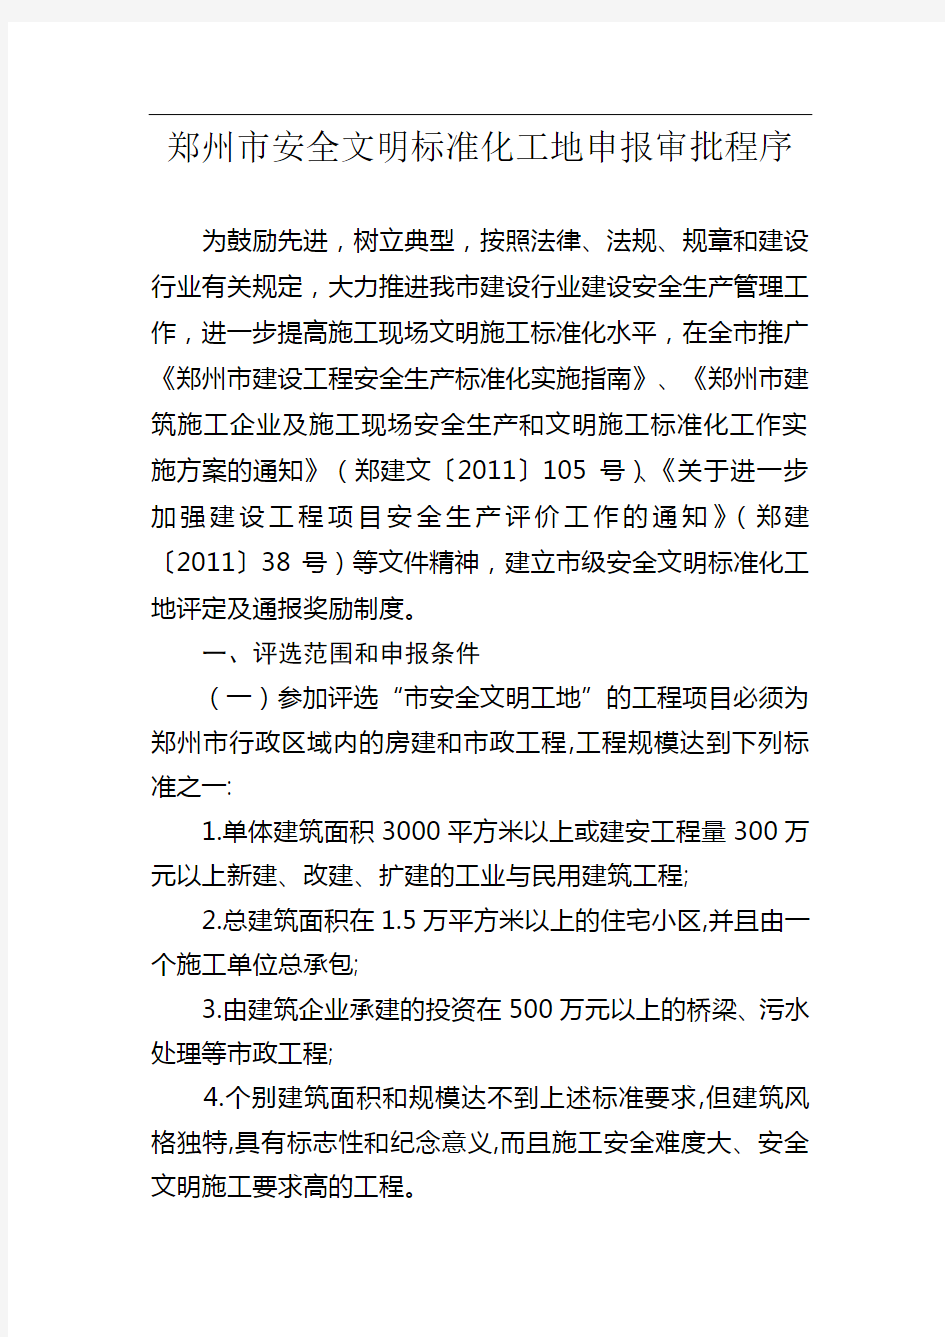 郑州市省、市级文明标准化工地、文明工地申报审批程序